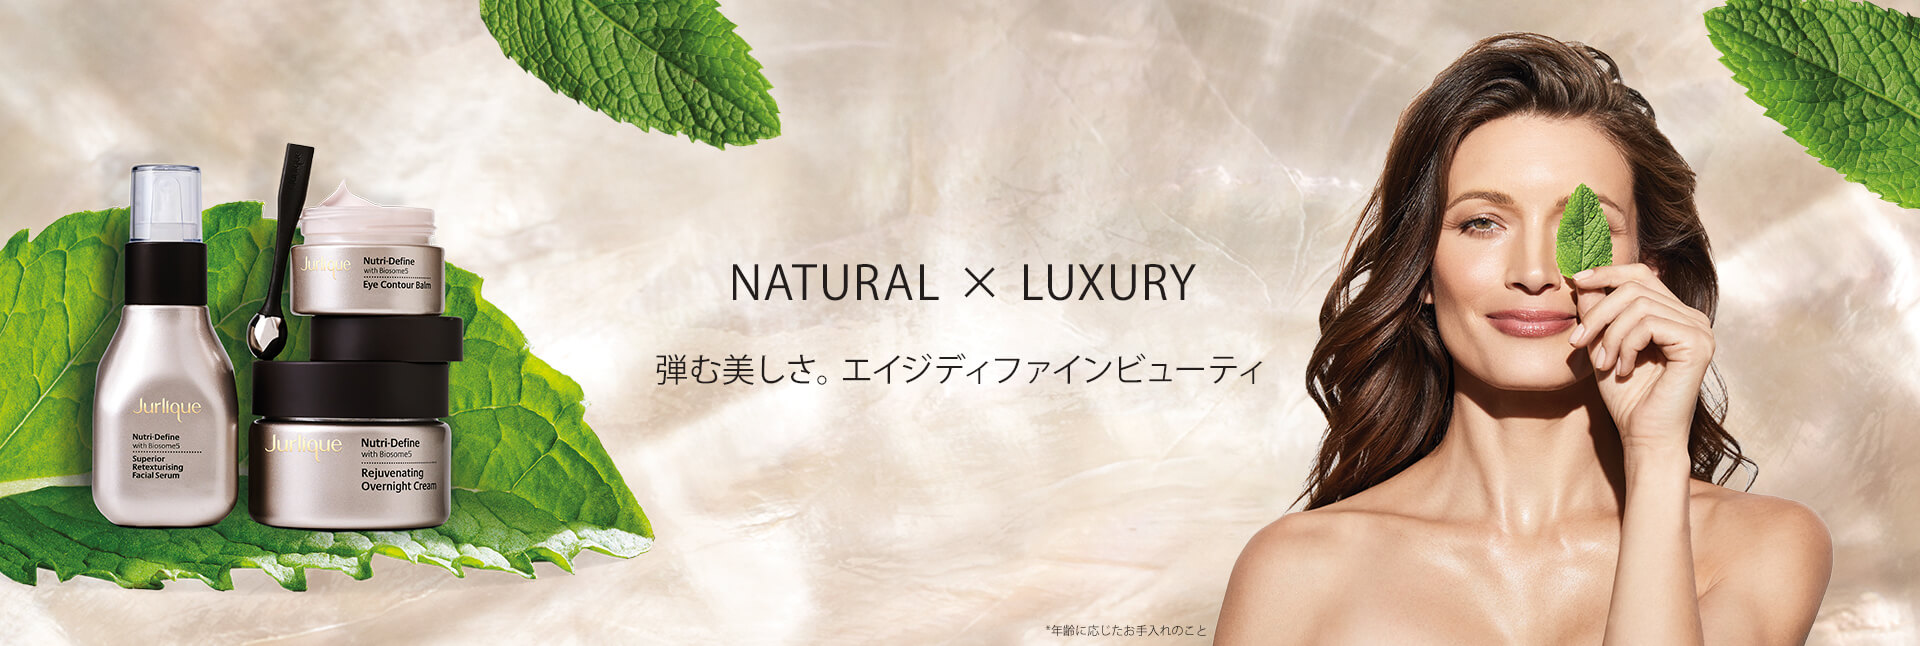 Natural x Luxury 弾む美しさ。エイジディファインビューティ